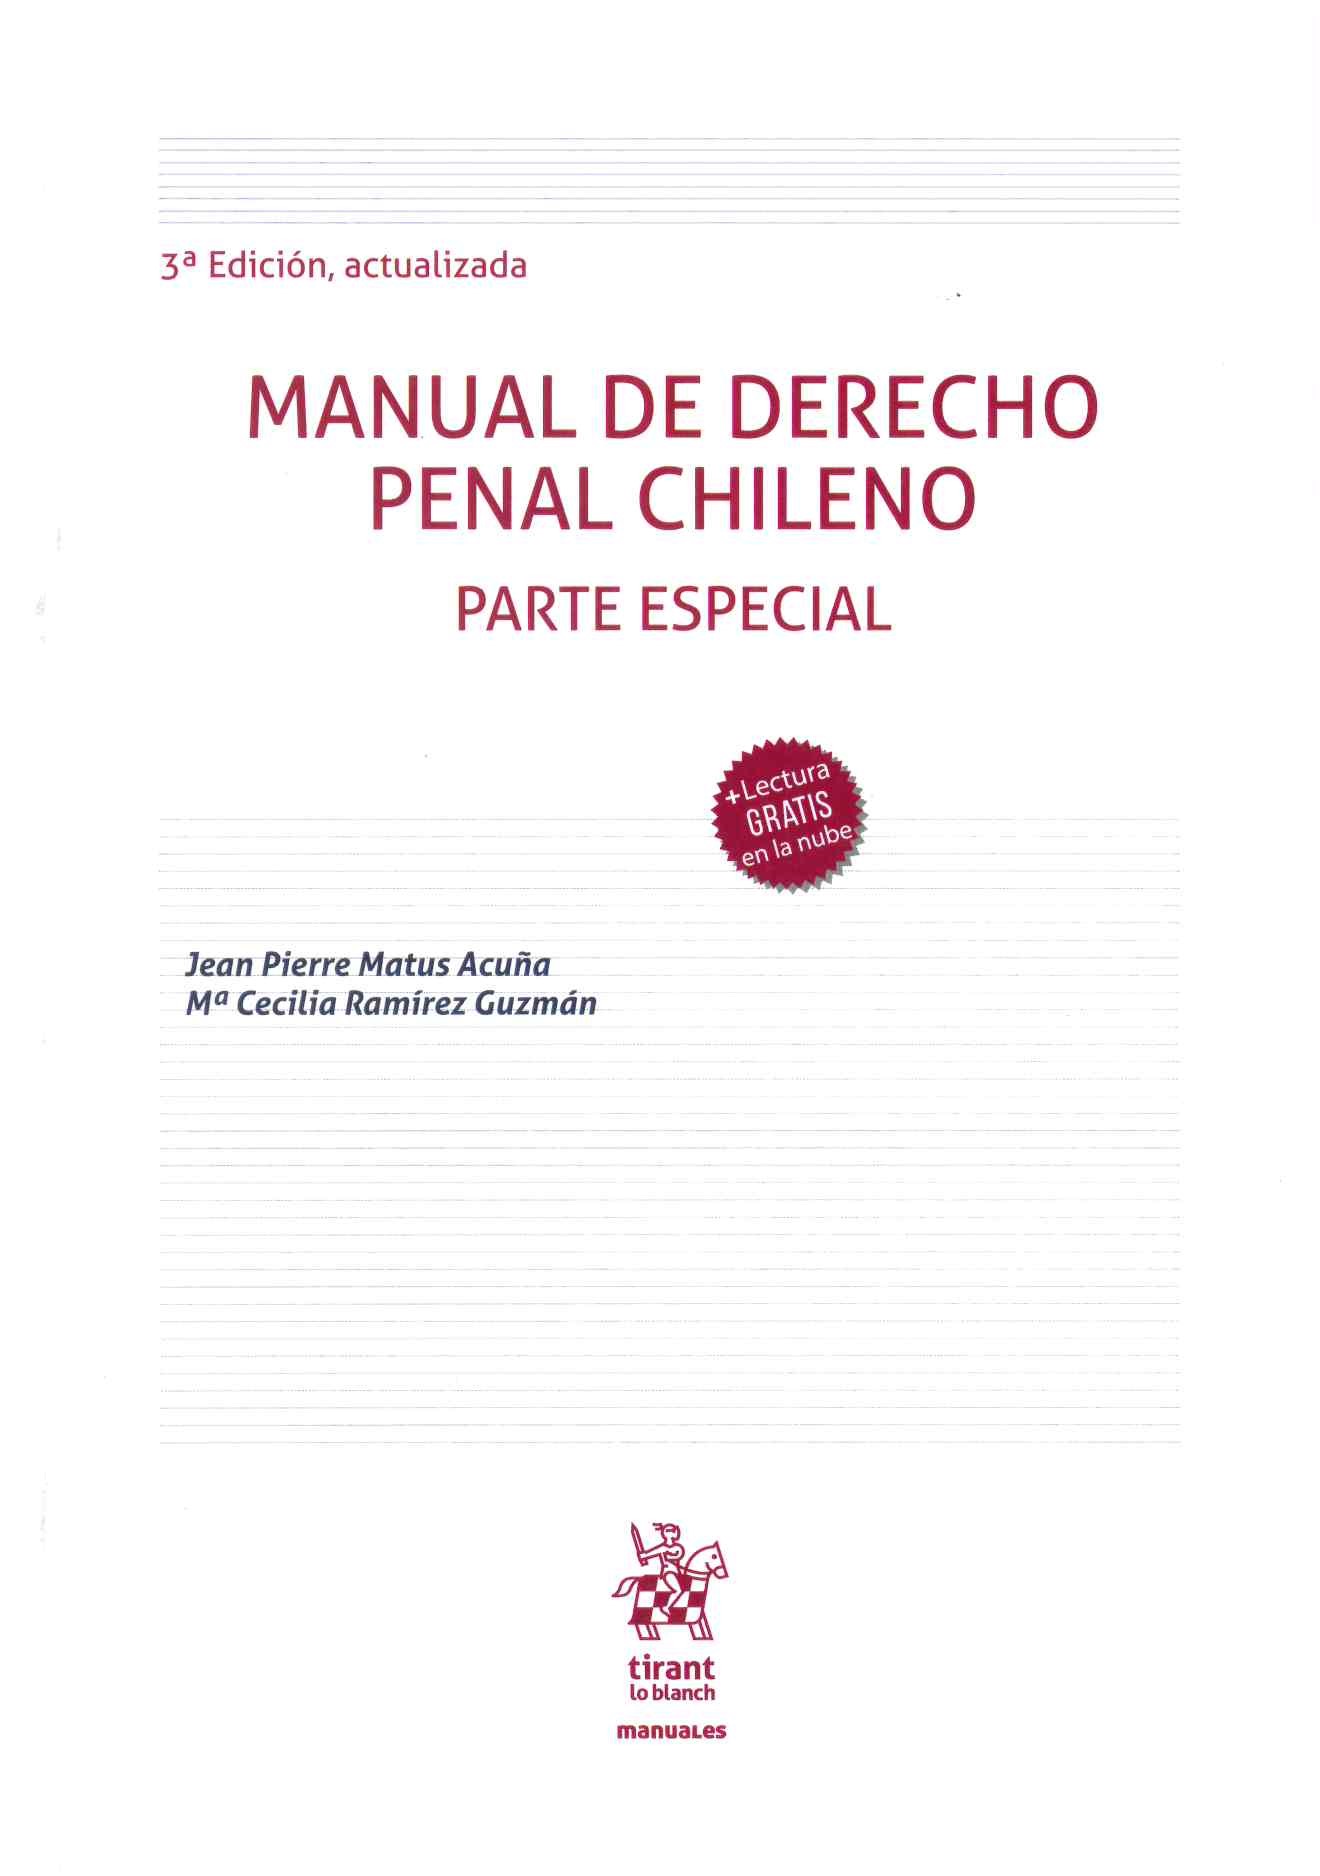 Manual de derecho penal chileno parte especial